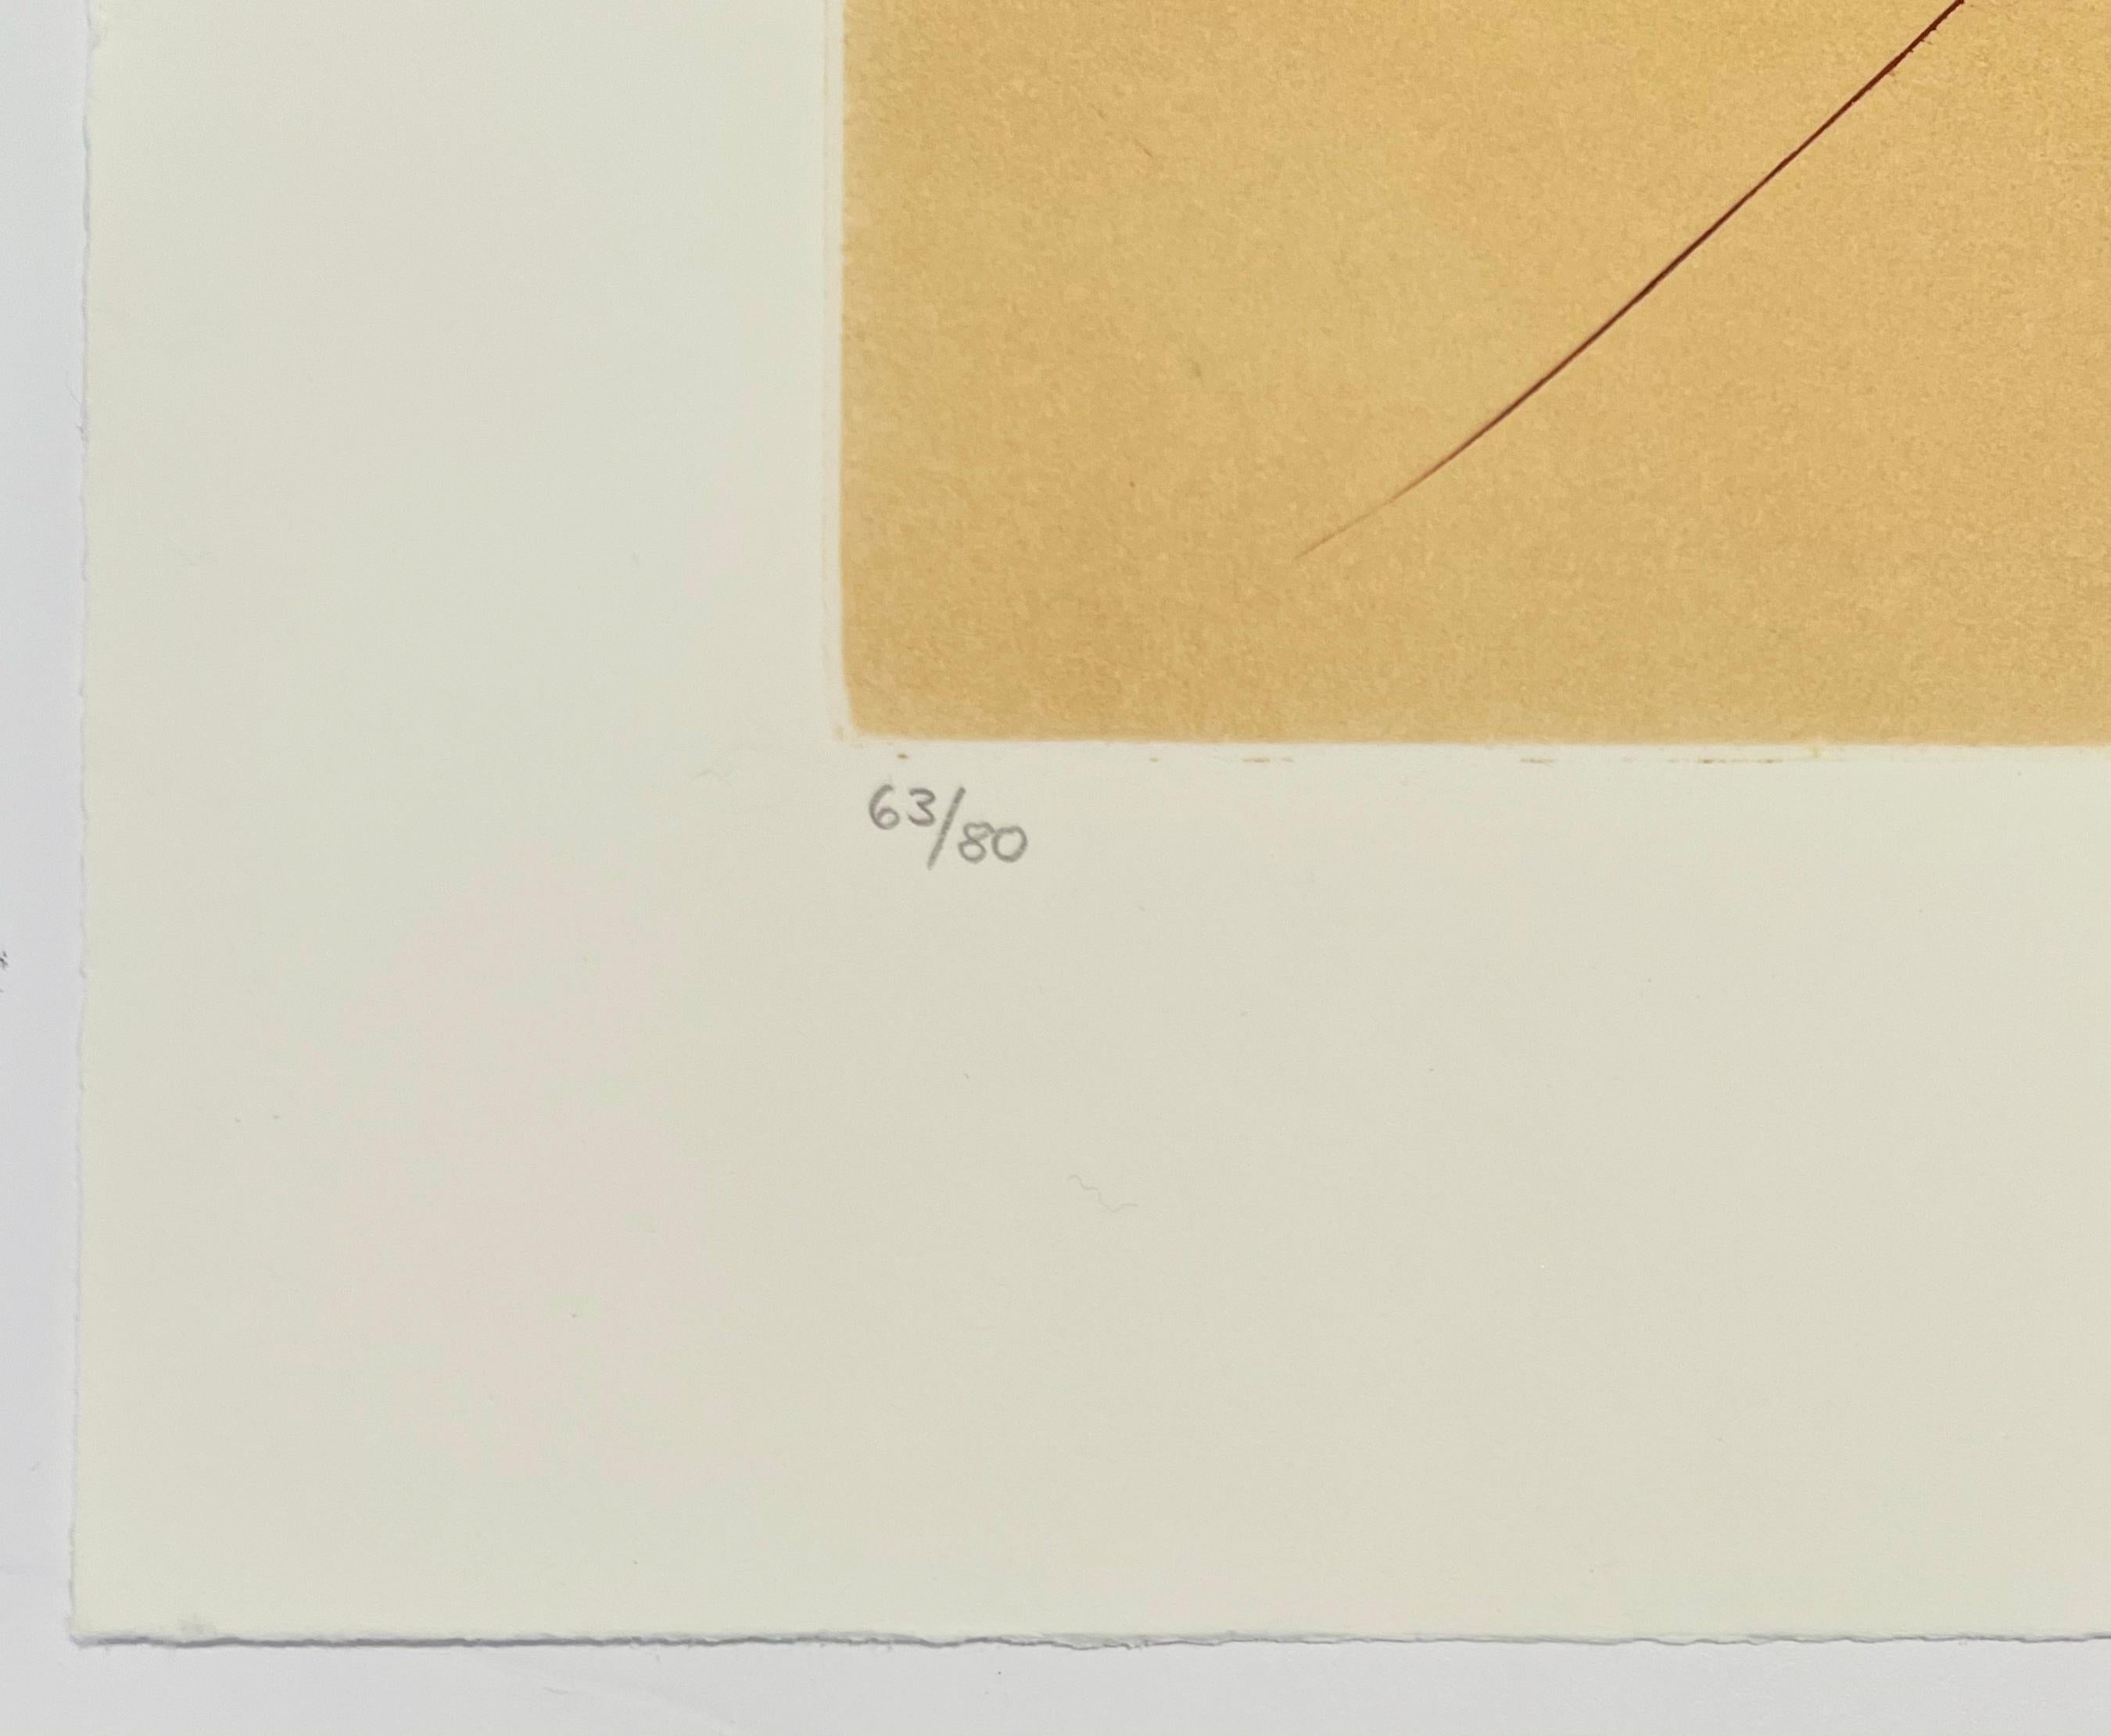 Artistics : Salvador Dali
Titre : Désert fabuleux du dahlia
Portefeuille : Neuf Paysages
Médium : Gravure
Année : 1980
Edition : 63/80
Taille du cadre : 26 1/4